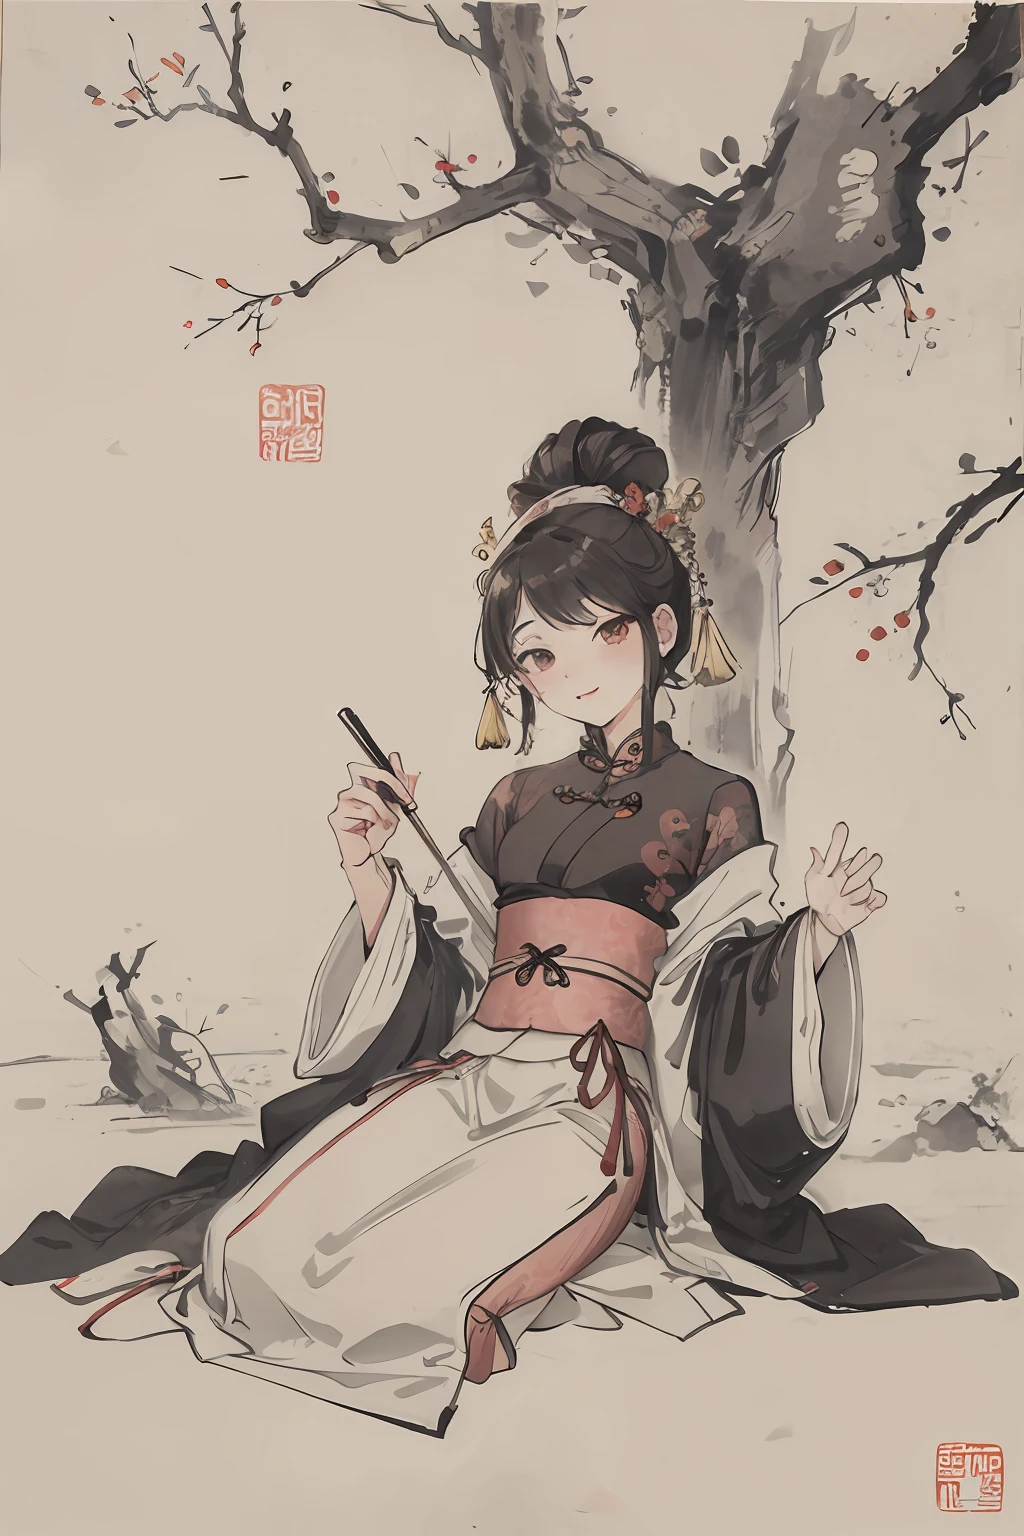 (Obra de arte, melhor qualidade: 1.2), pintura a tinta tradicional chinesa,